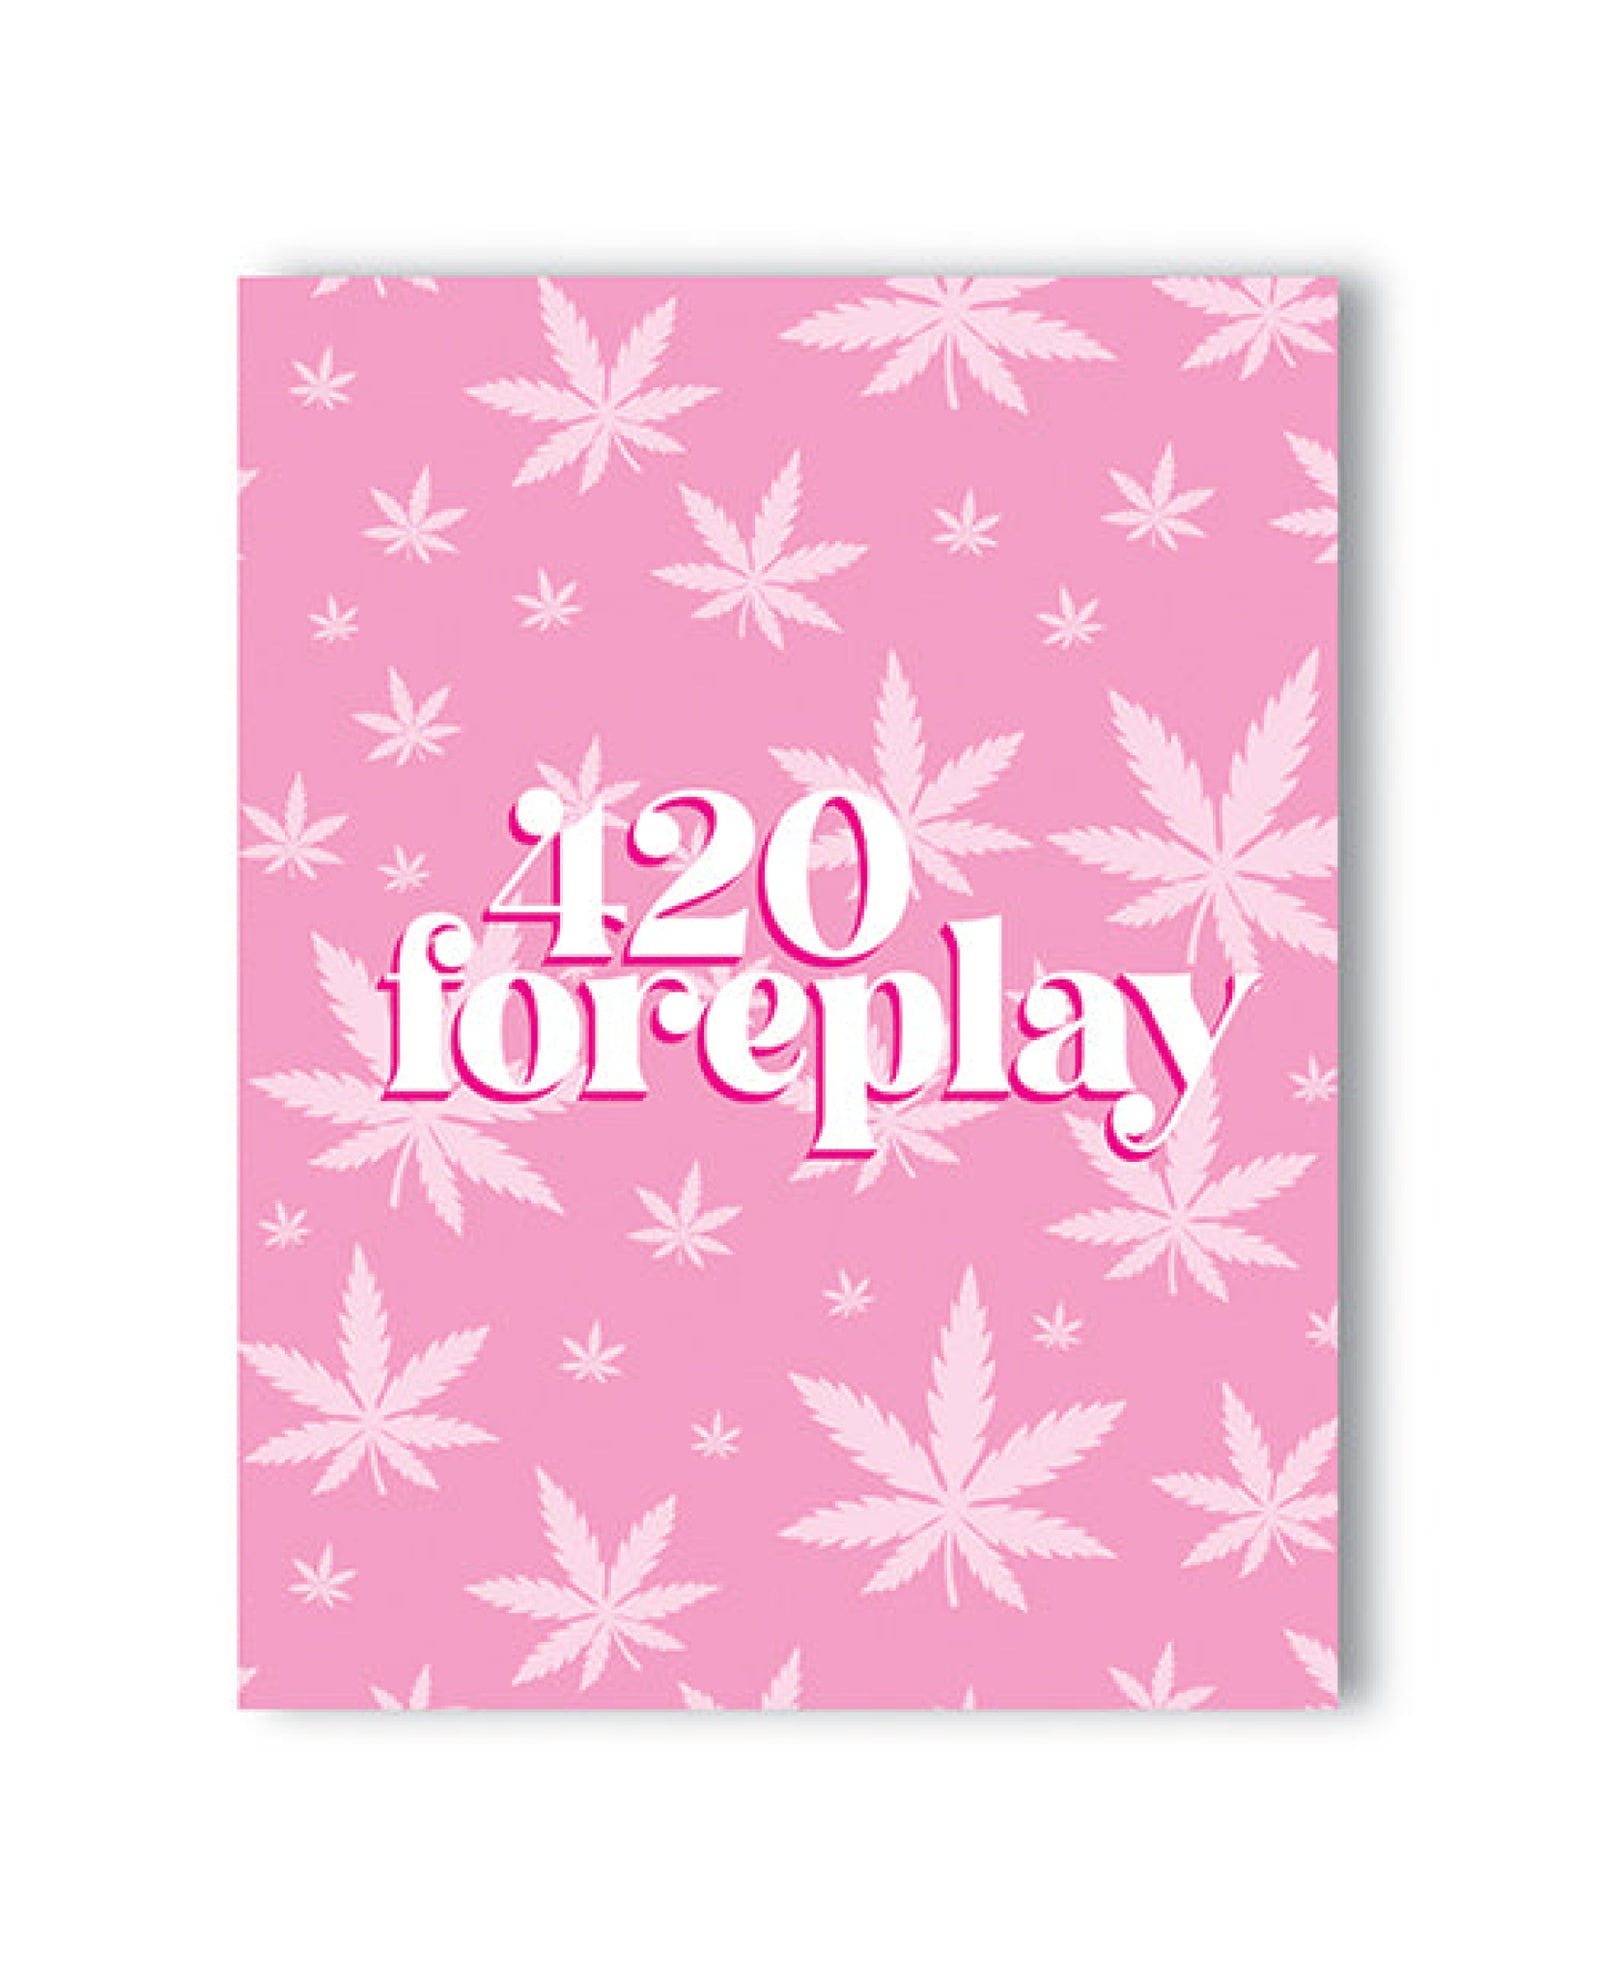 420 Foreplay 420 Greeting Card Kush Kards